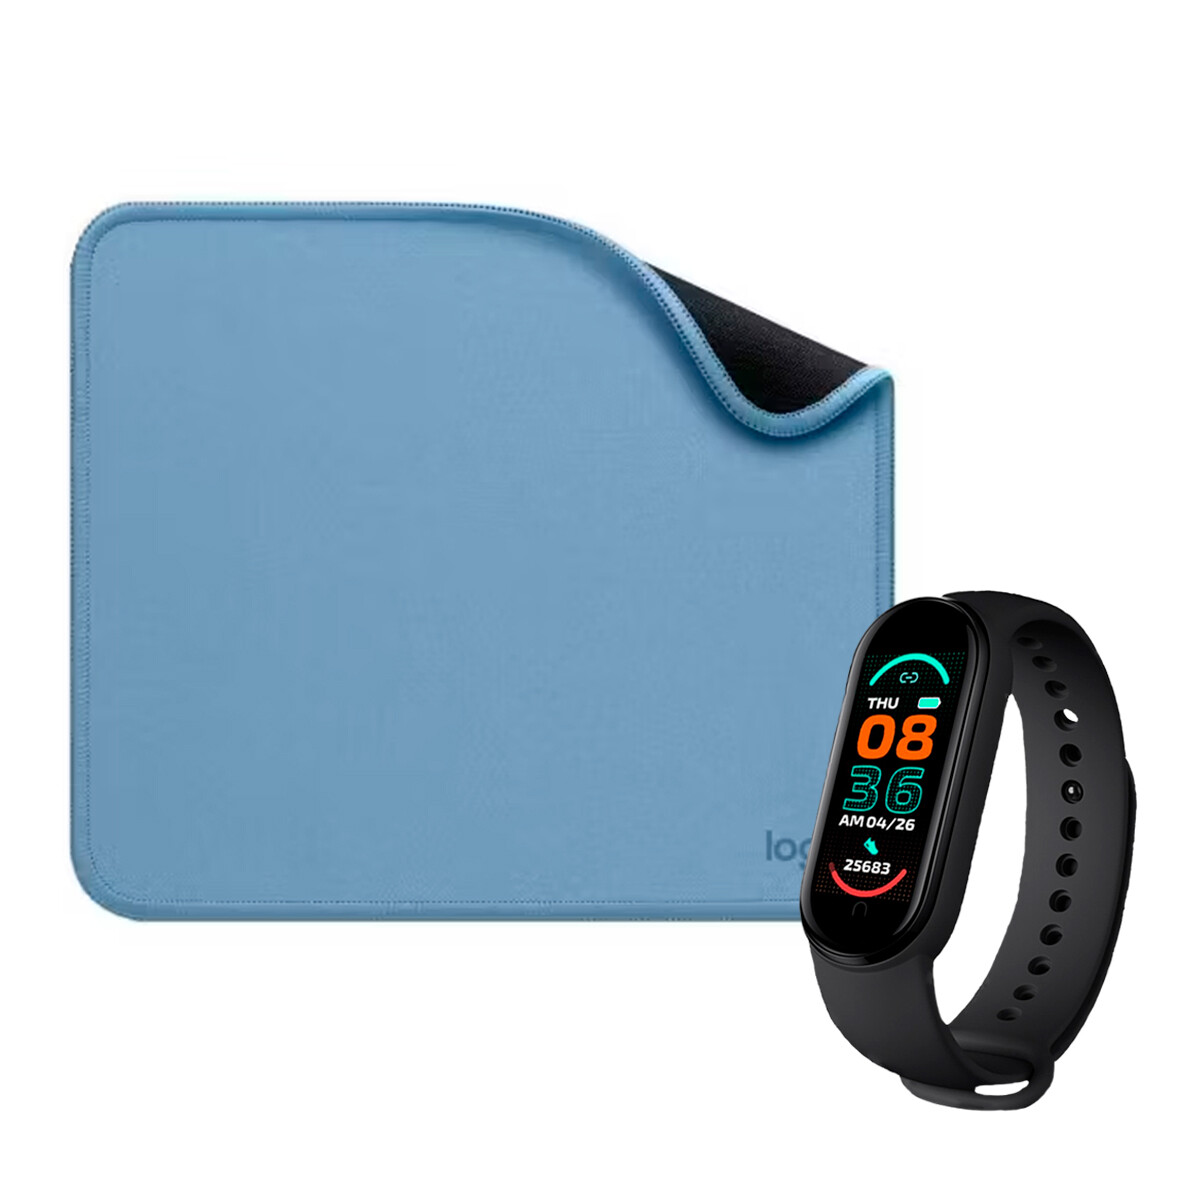 Mouse Pad Studio Series 23x20cm Blue Logitech + Smartwatch 